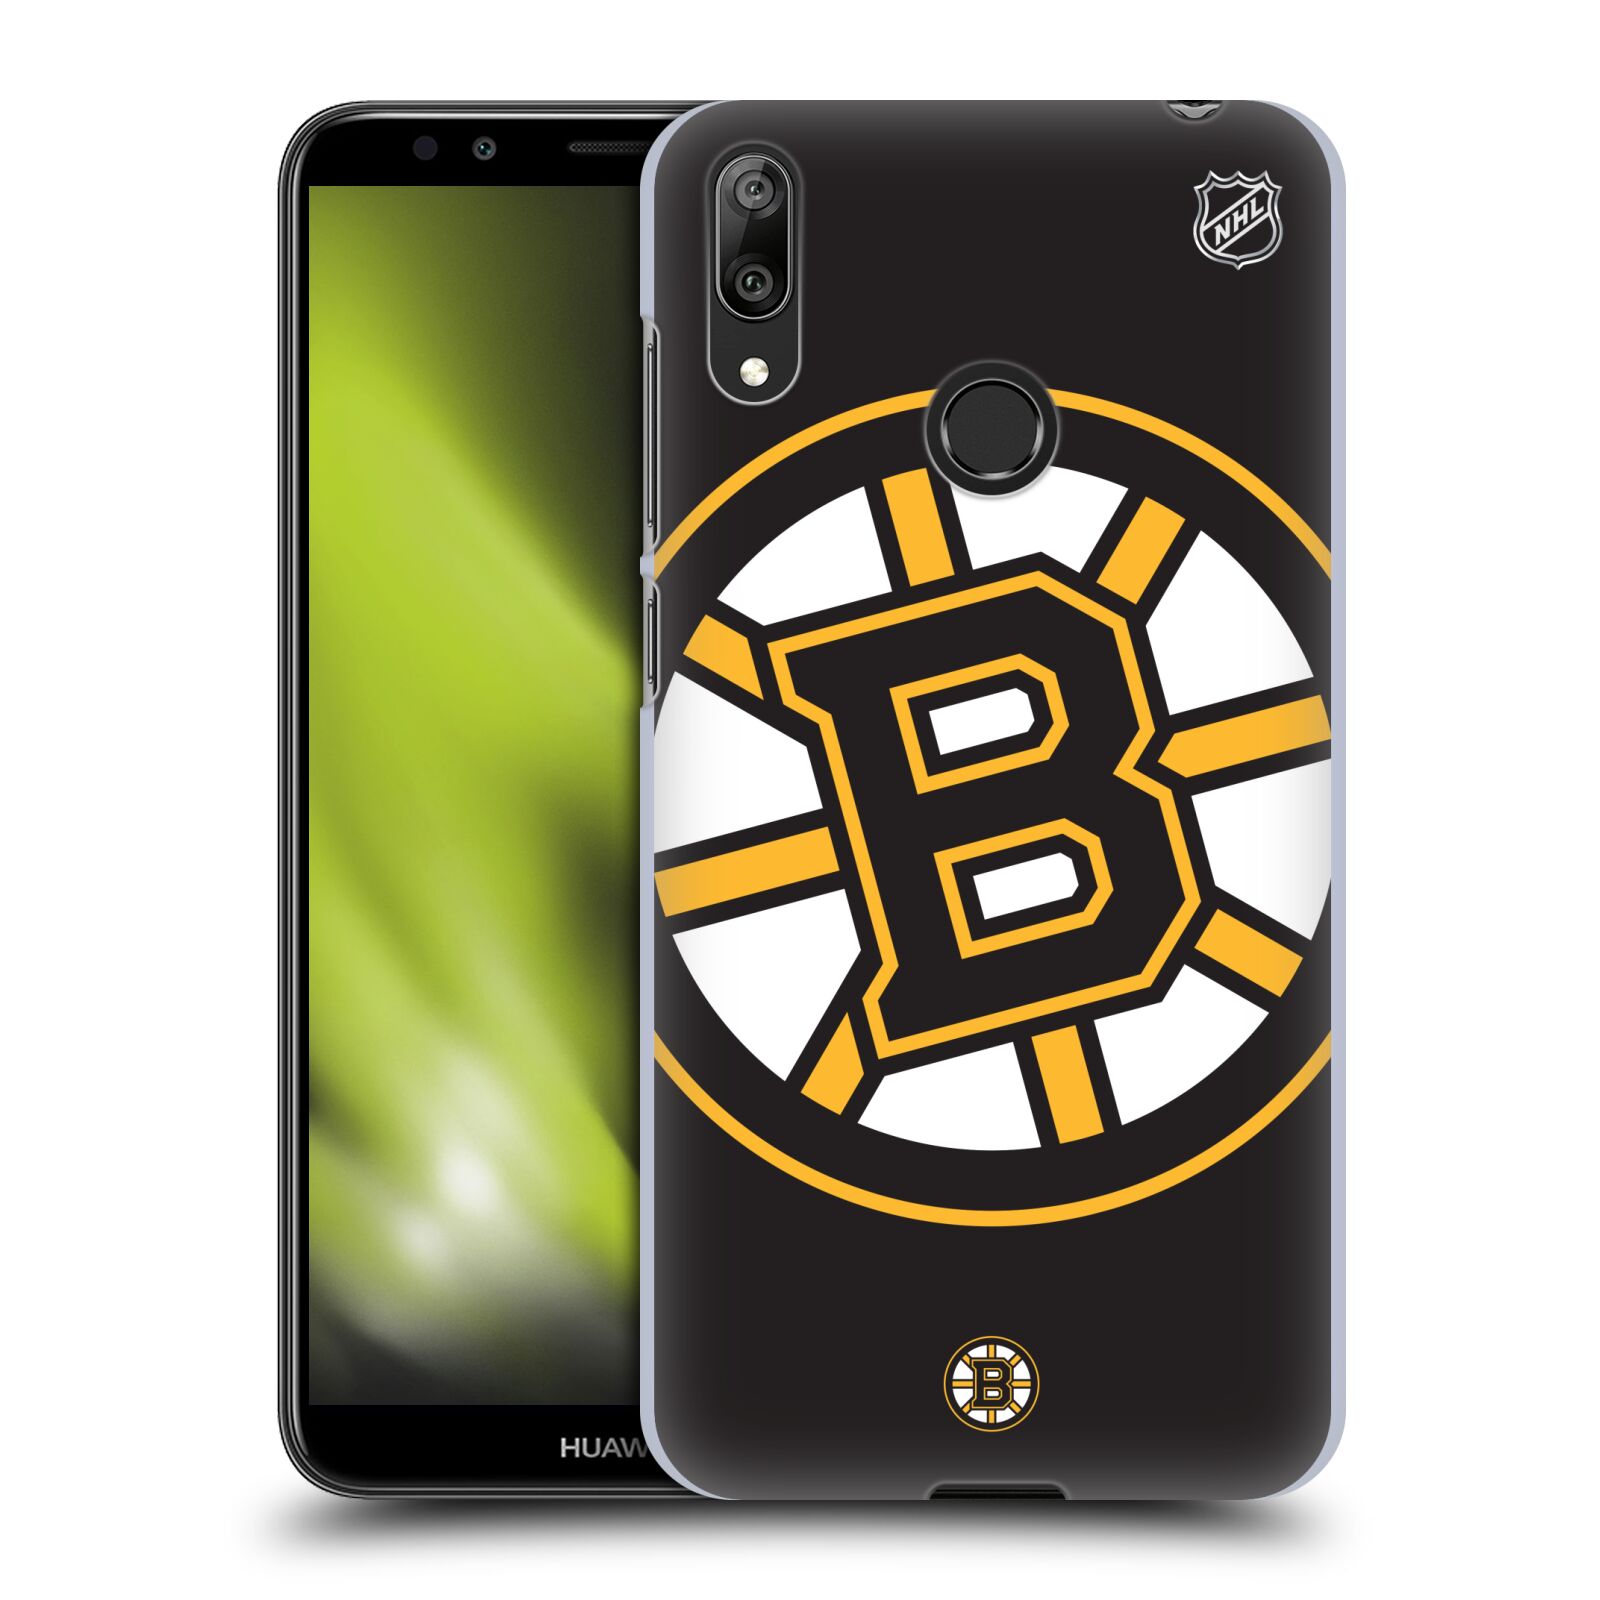 Pouzdro na mobil Huawei Y7 2019 - HEAD CASE - Hokej NHL - Boston Bruins - velký znak